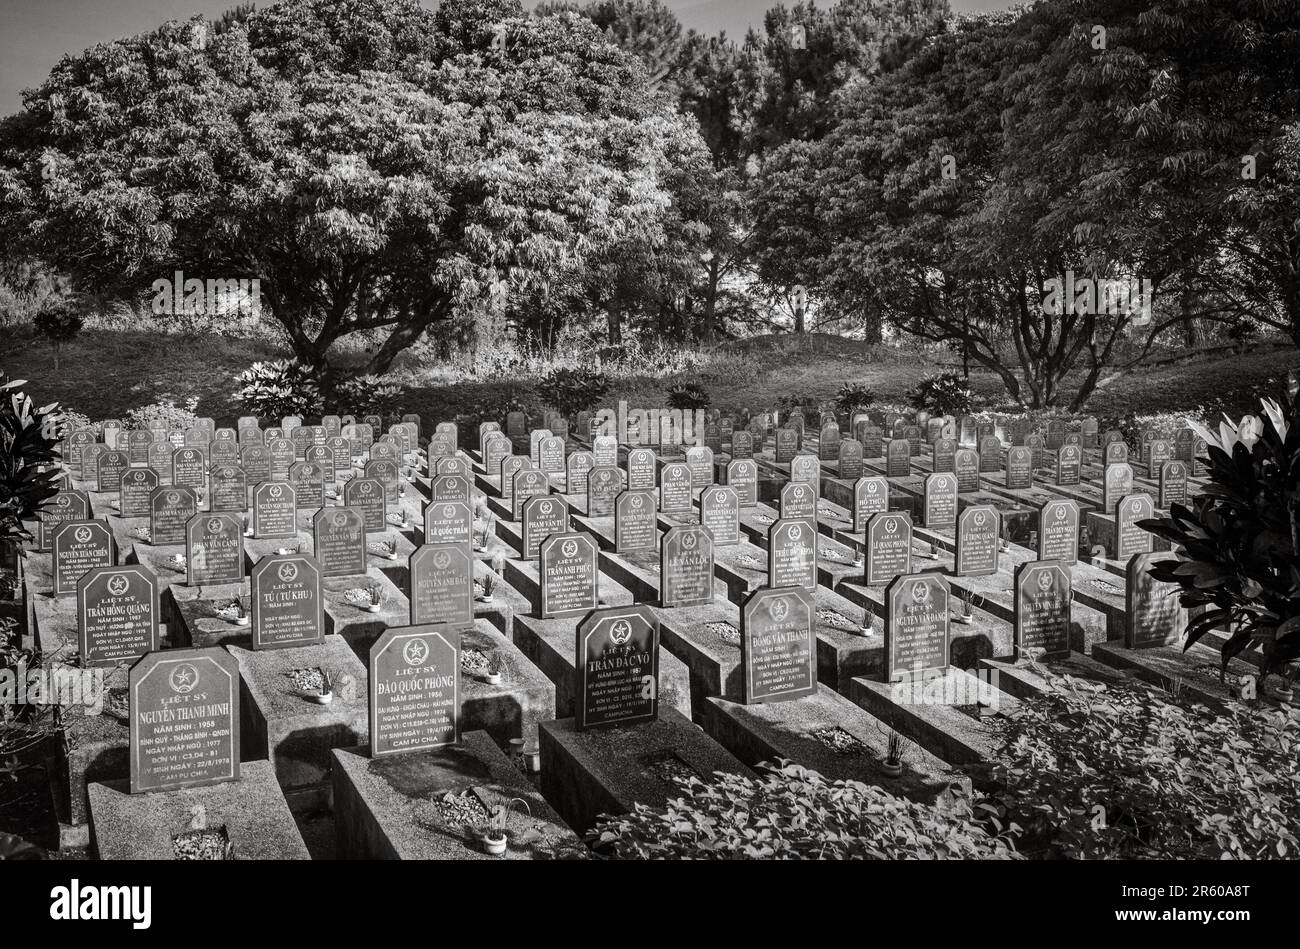 Tombes de guerre dans le cimetière des martyrs de guerre à IA GRAI, province de Gia Lai dans les Hautes-terres centrales du Vietnam. Les tombes contiennent principalement les restes de losa Banque D'Images